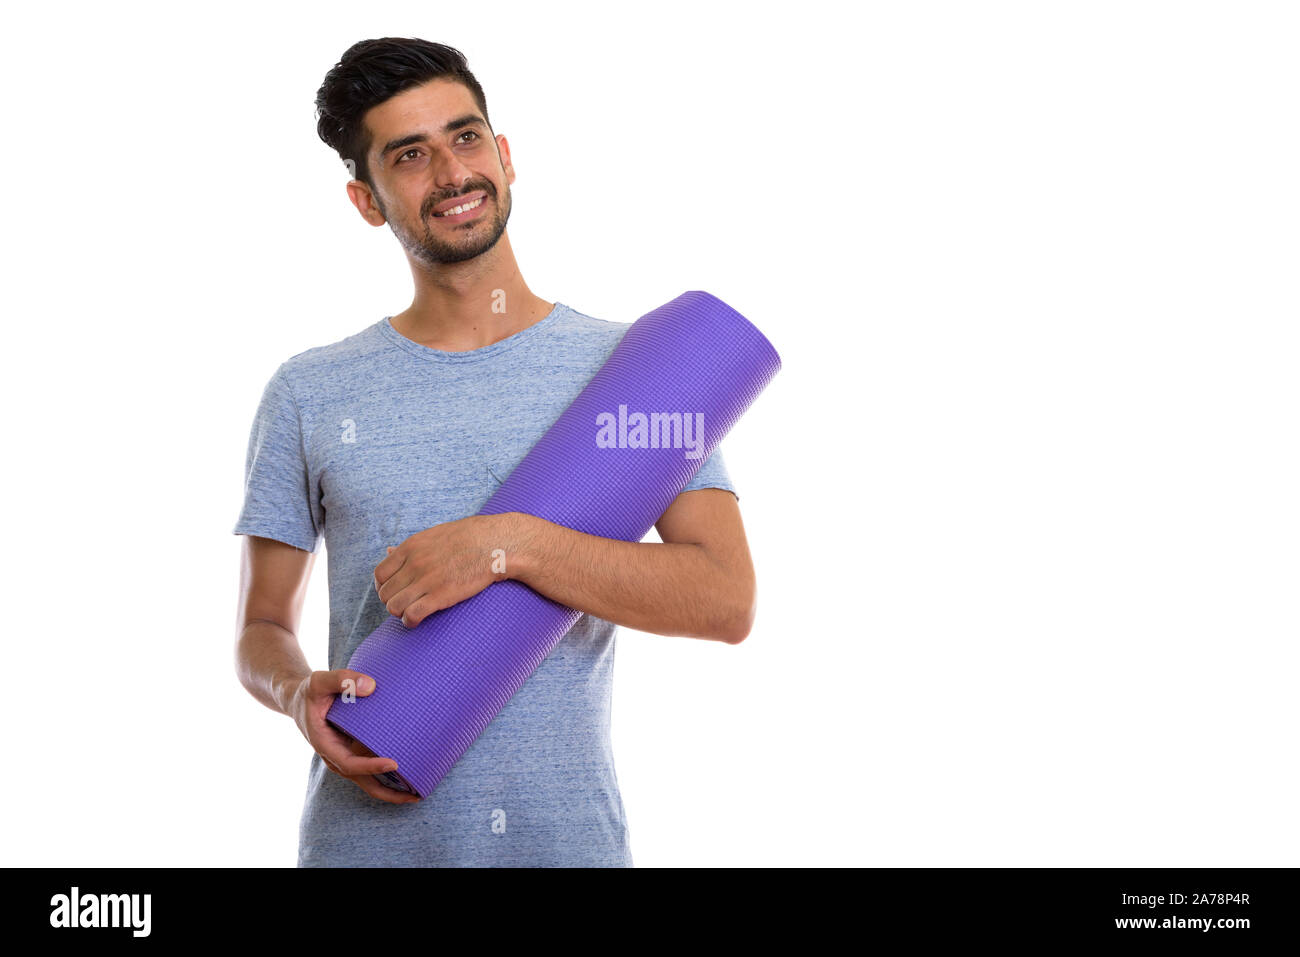 Studio shot of young man smiling persan heureux tout en maintenant un tapis de yoga Banque D'Images